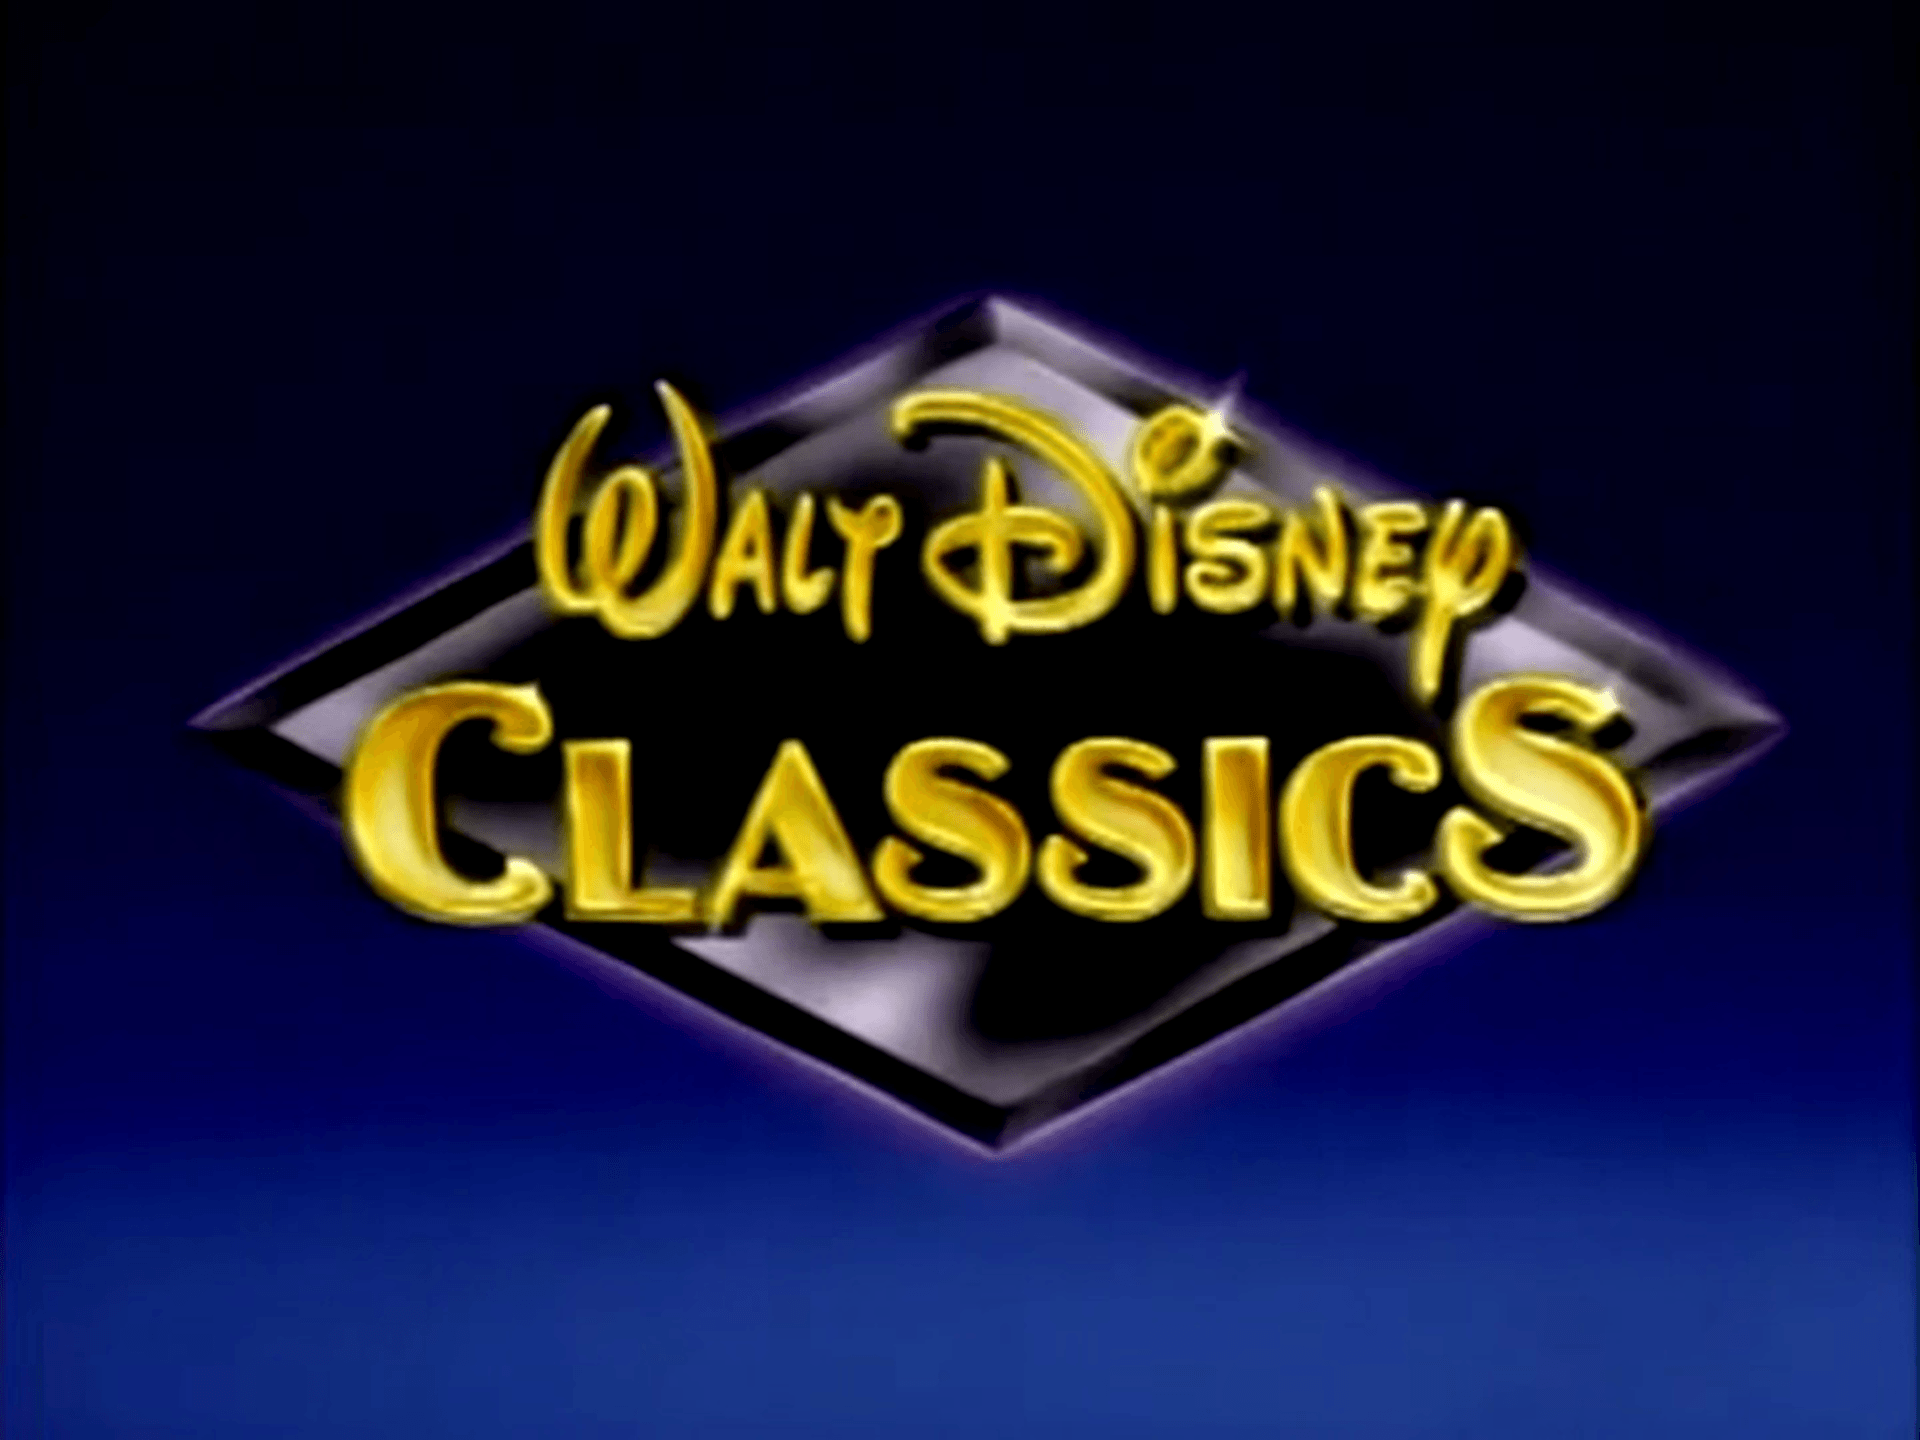 Walt Disney Classics 1992 Logo - Walt Disney Classics | Disney Wiki | FANDOM powered by Wikia